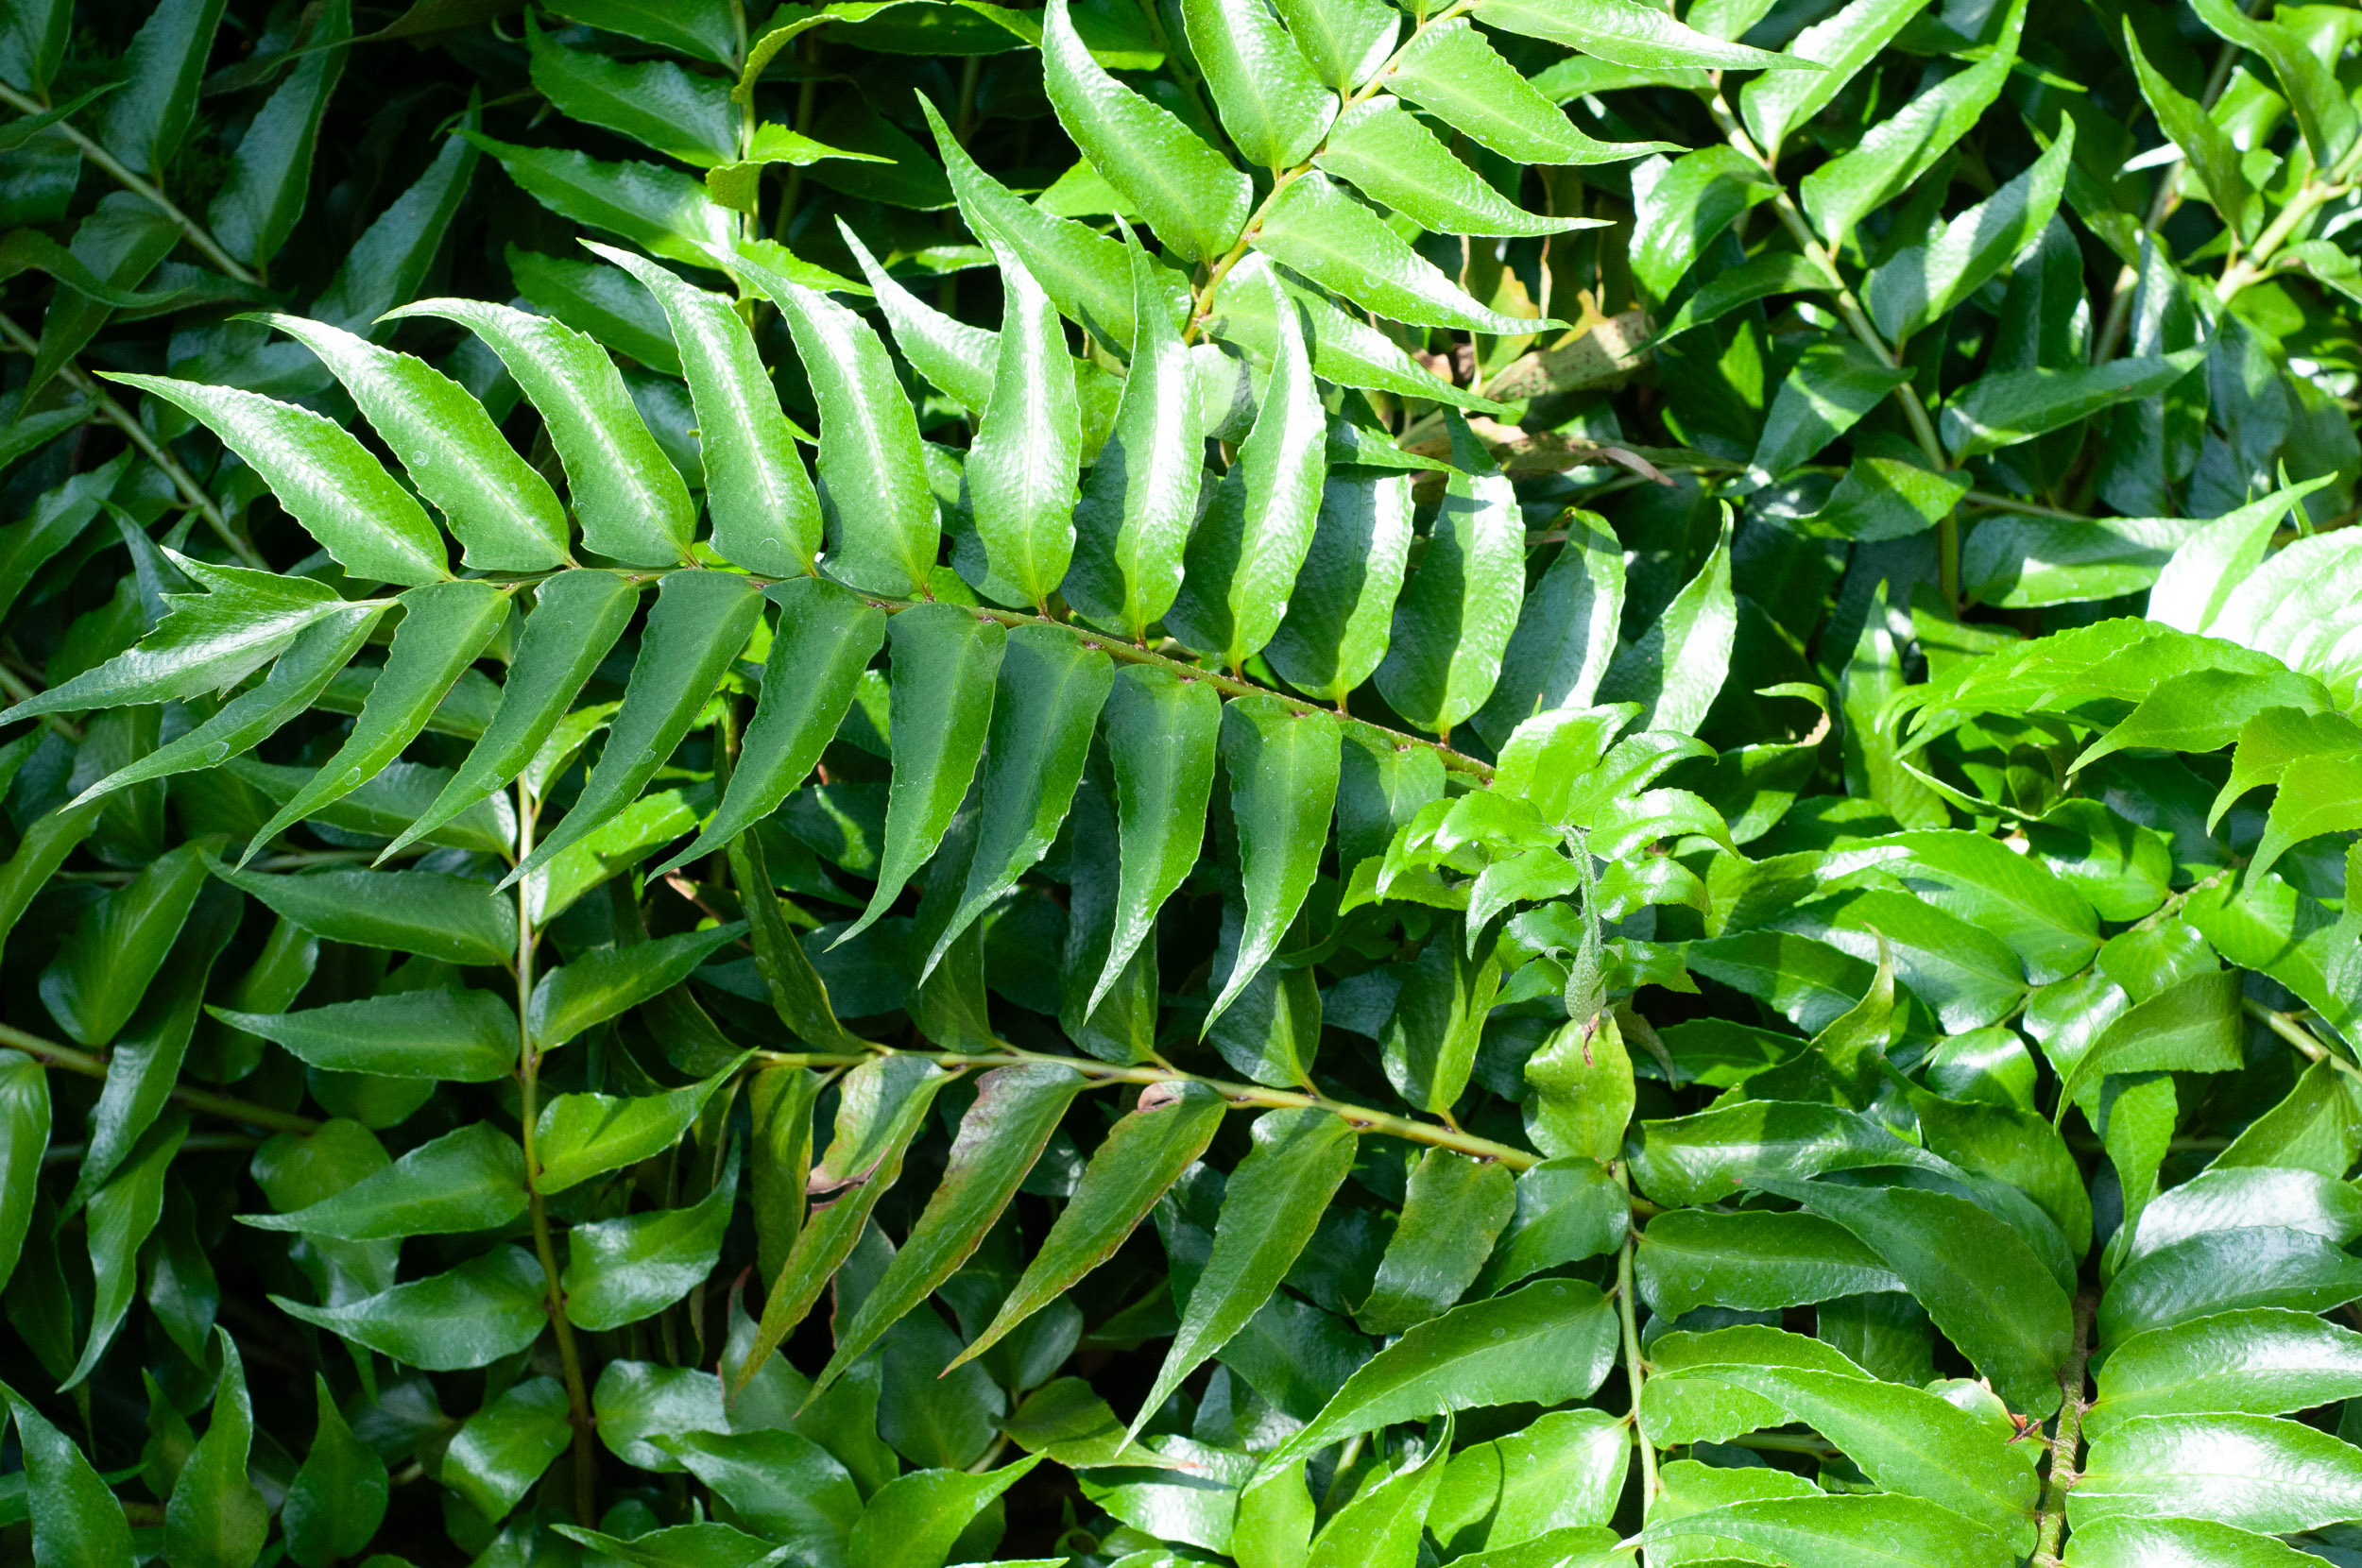 La Falcatum Cyrtomium è una specie di felce spesso utilizzata per conferire verticalità al giardino; originaria della Cina e del Giappone questa pianta sempreverde presenta lunghe foglie di colore verde scuro